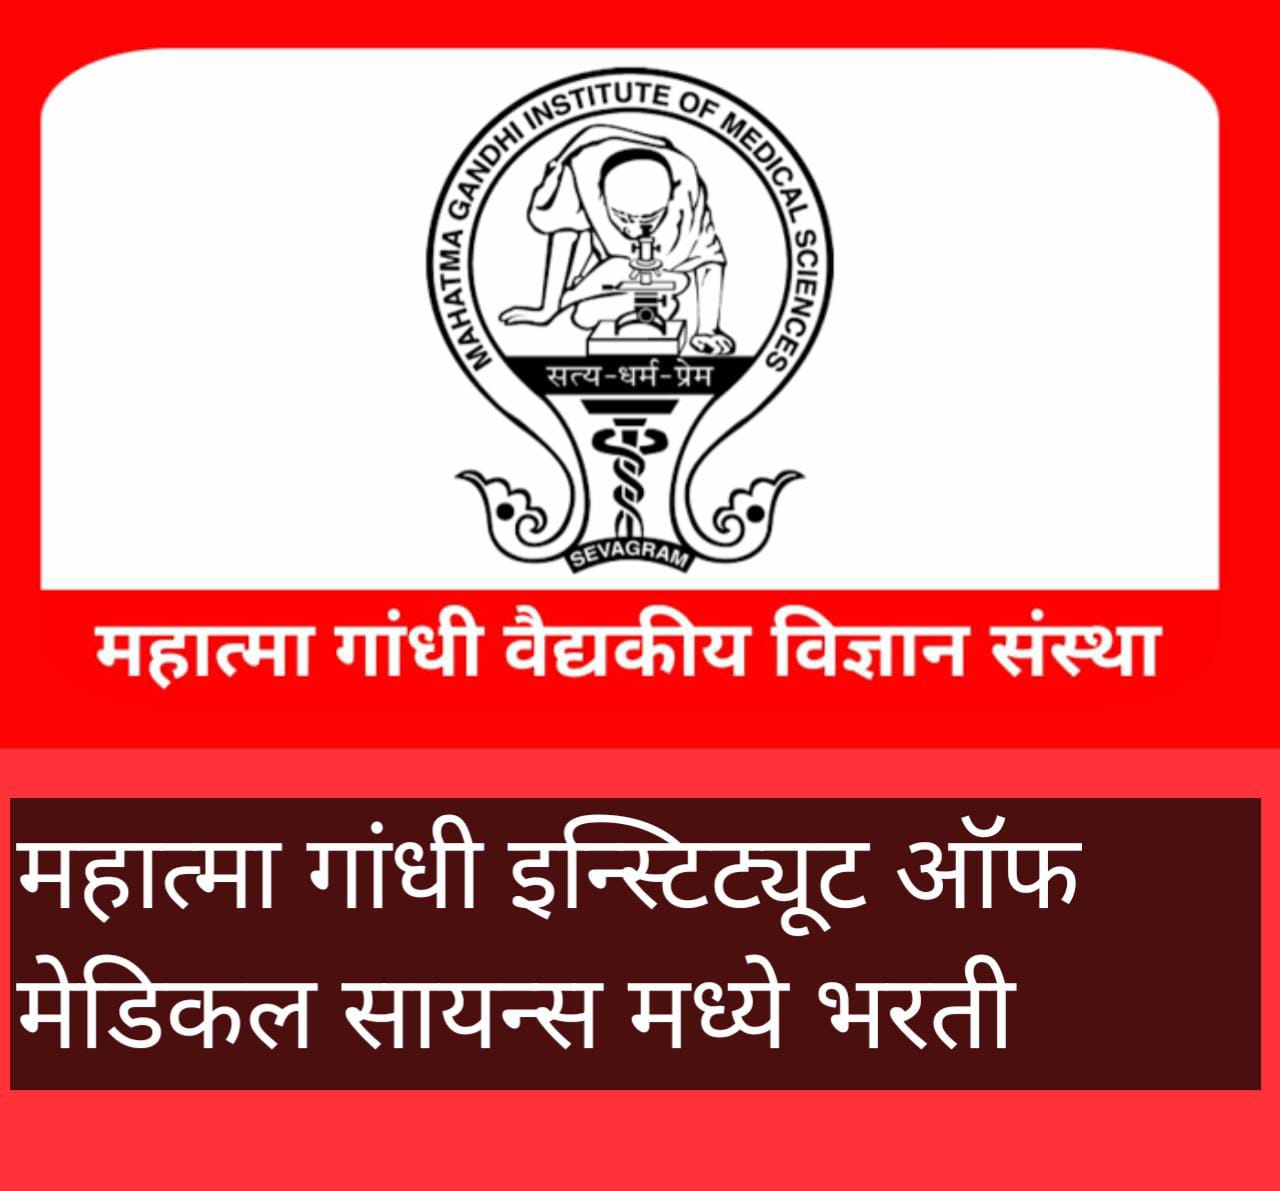 Mahatma Gandhi institute of medical science recruitment